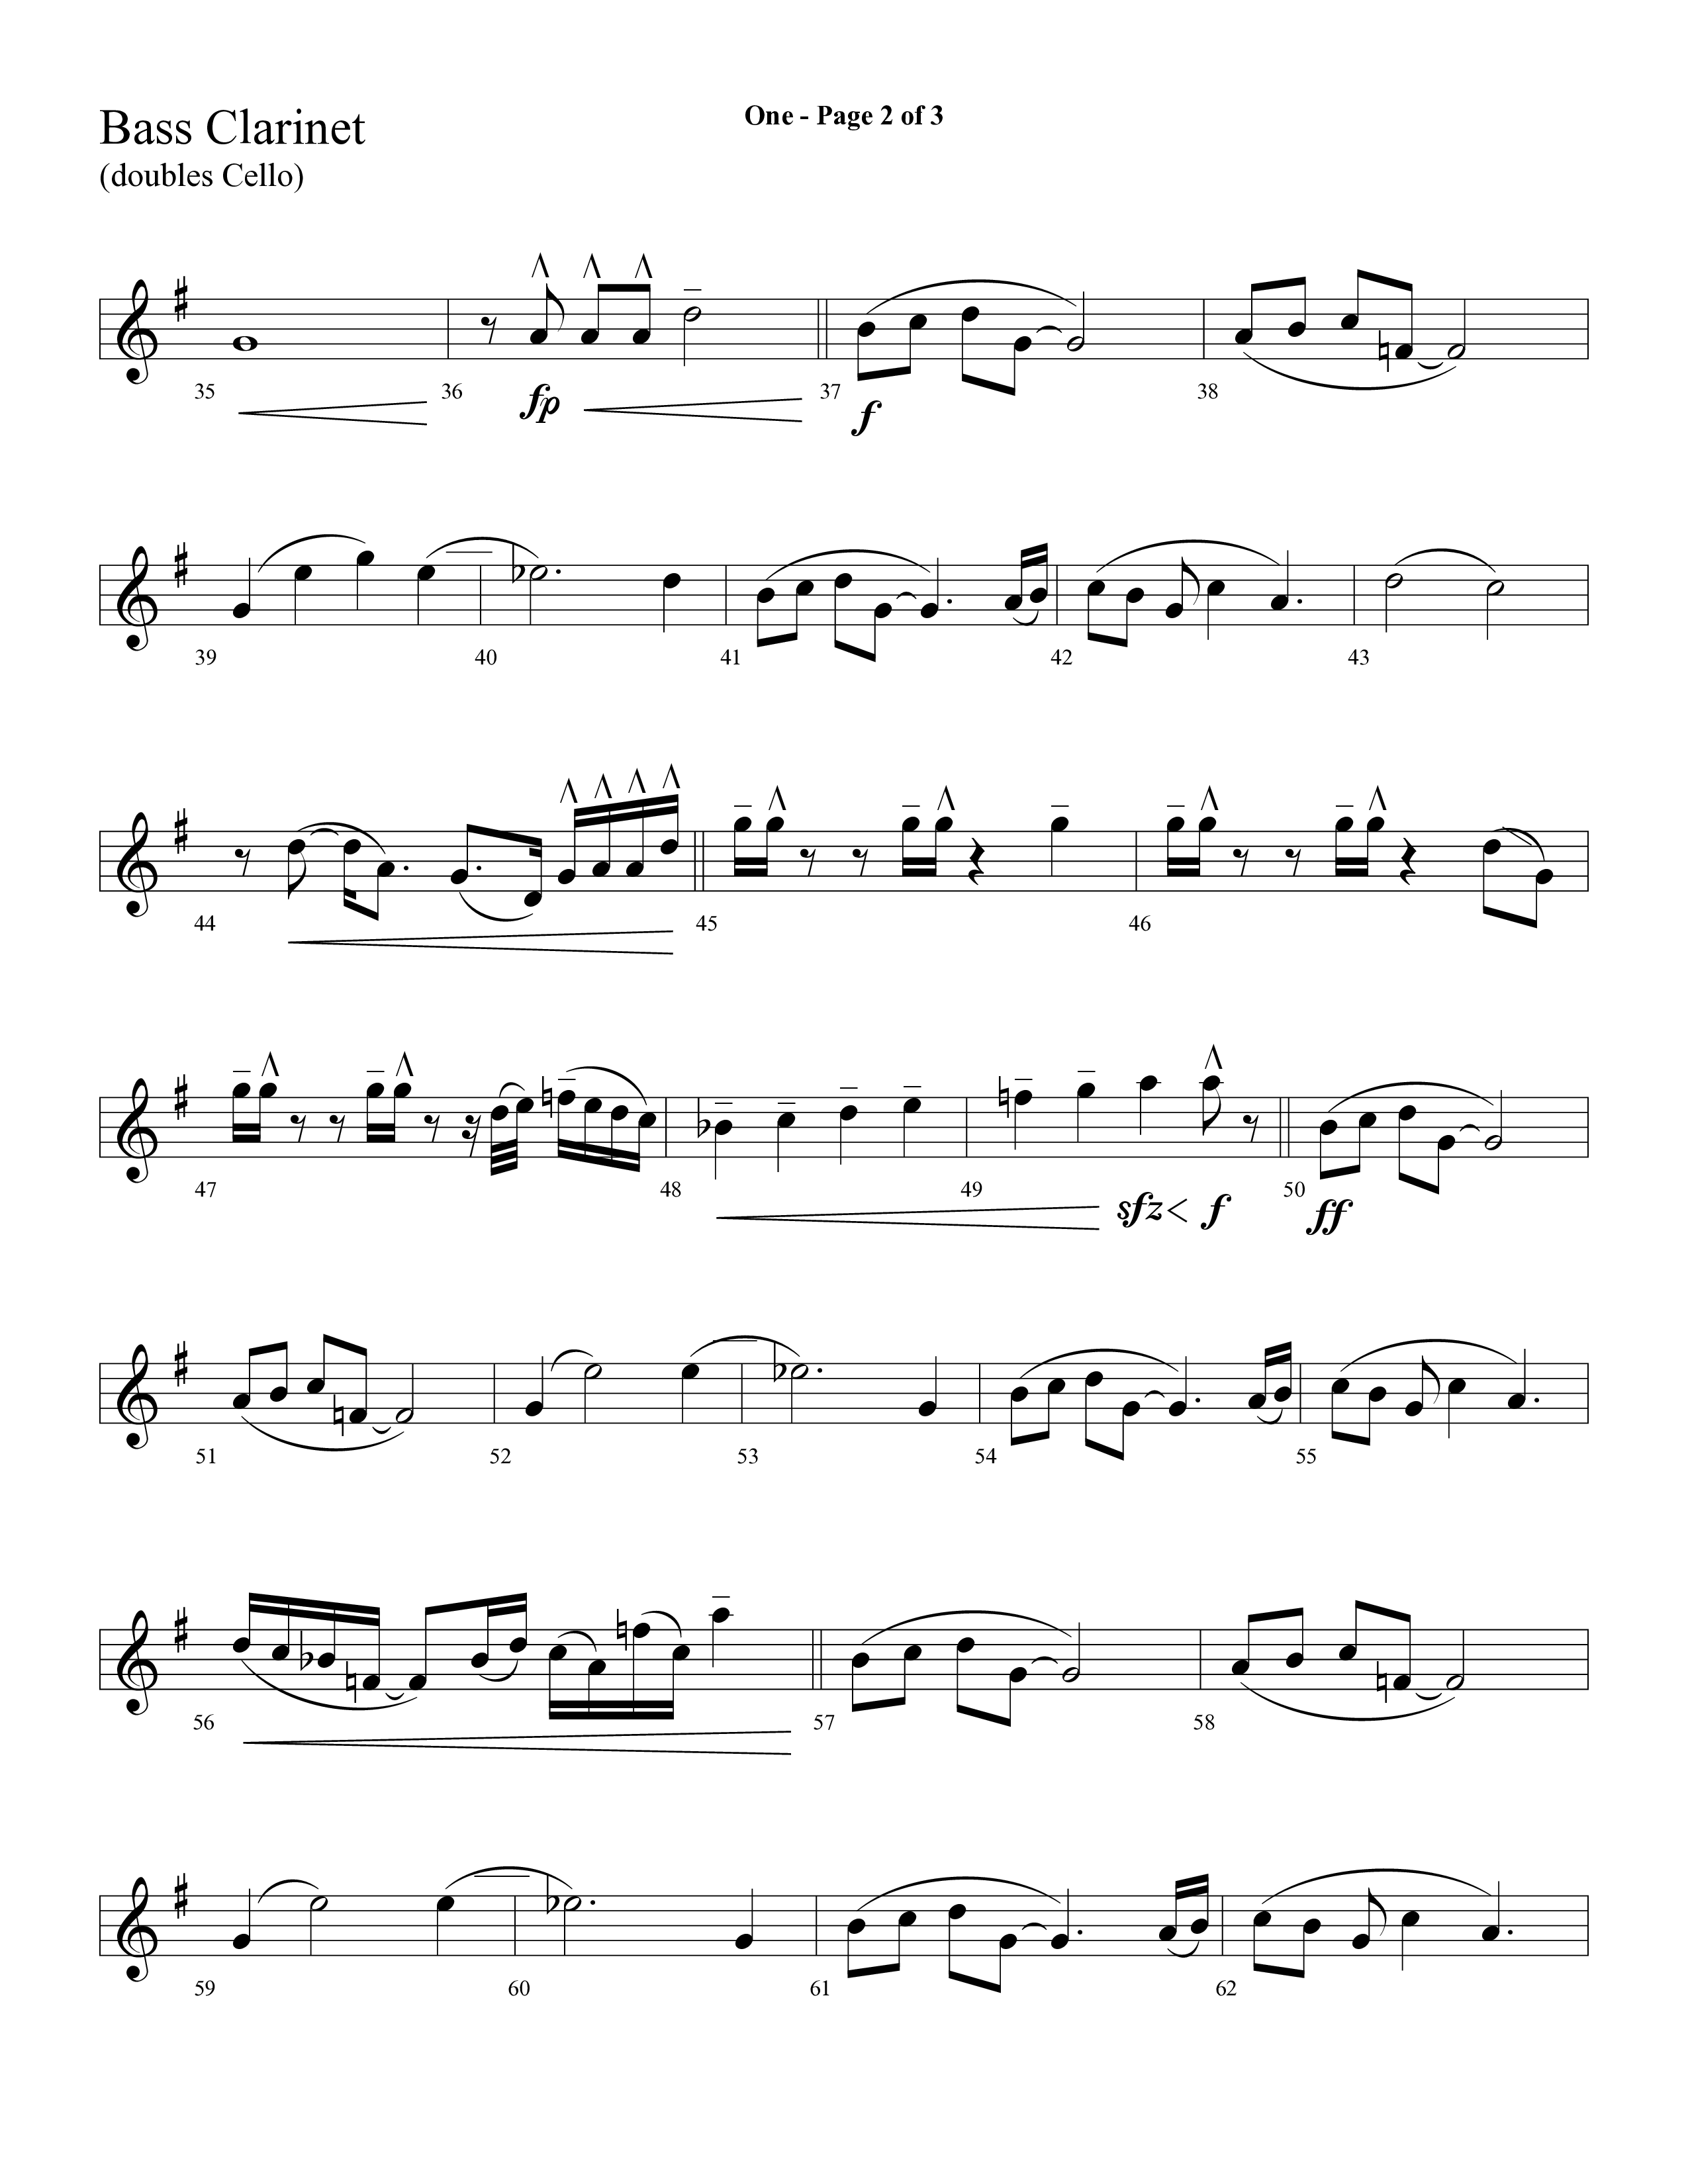 One (Choral Anthem SATB) Bass Clarinet (Lifeway Choral)